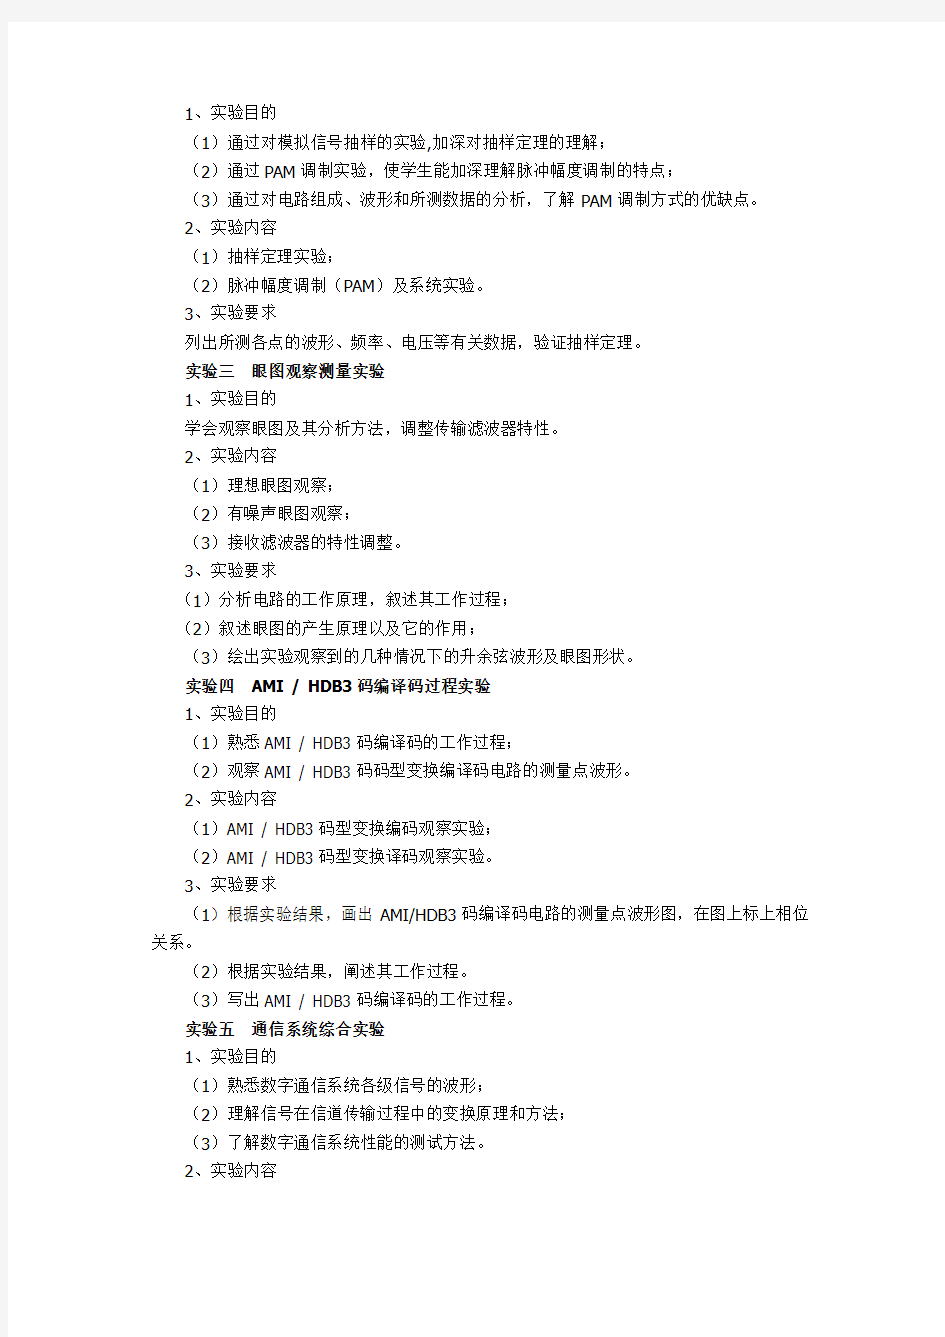 潍坊学院《计算机网络安全》课程(0212014)实验大纲